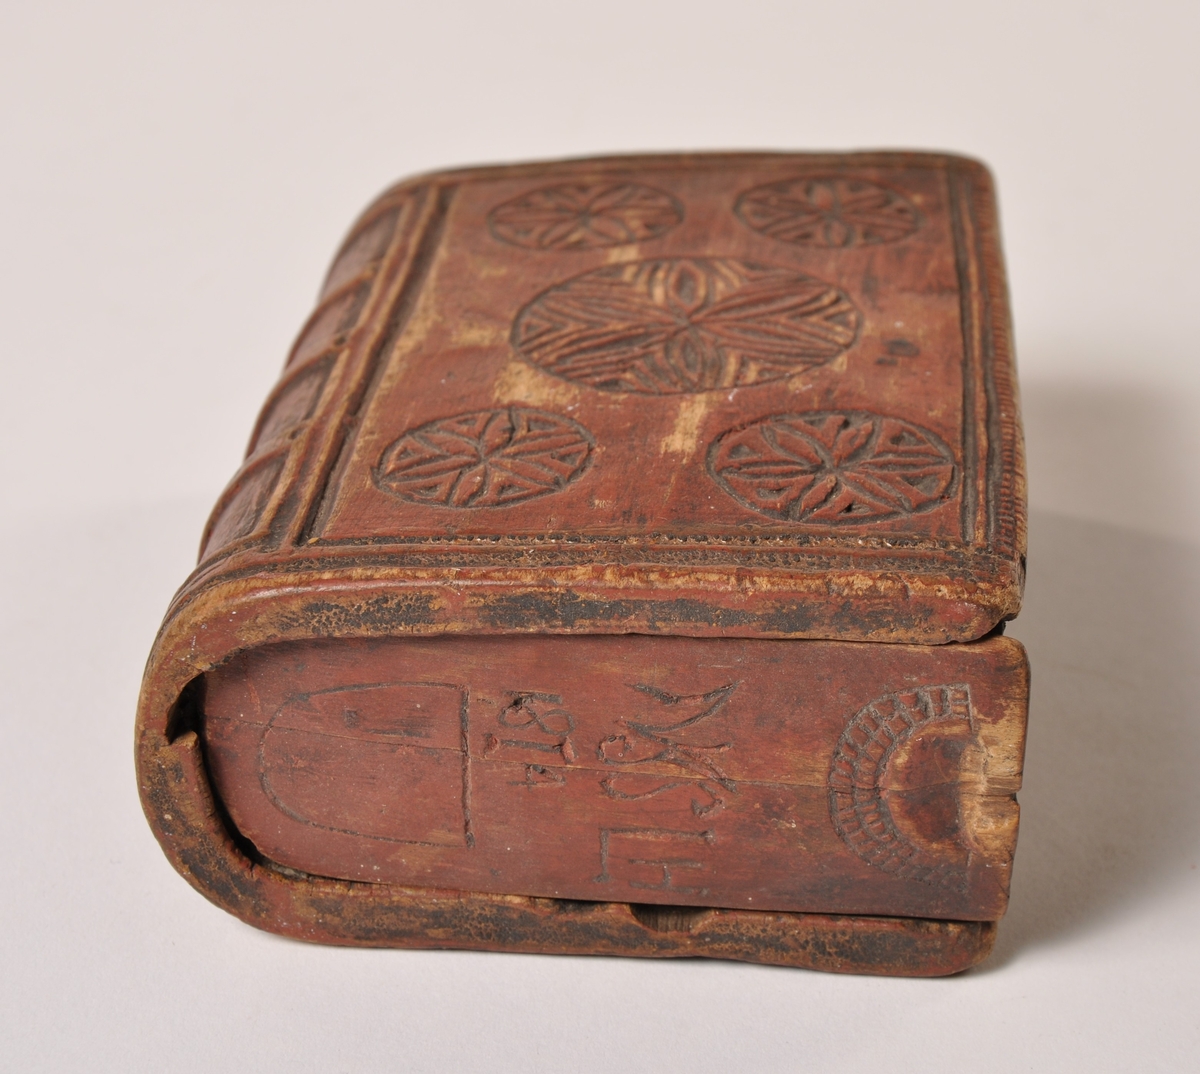 Eske formet som en bok. Skyvelokk i begge ender. Utskjært dekor, datert 1814